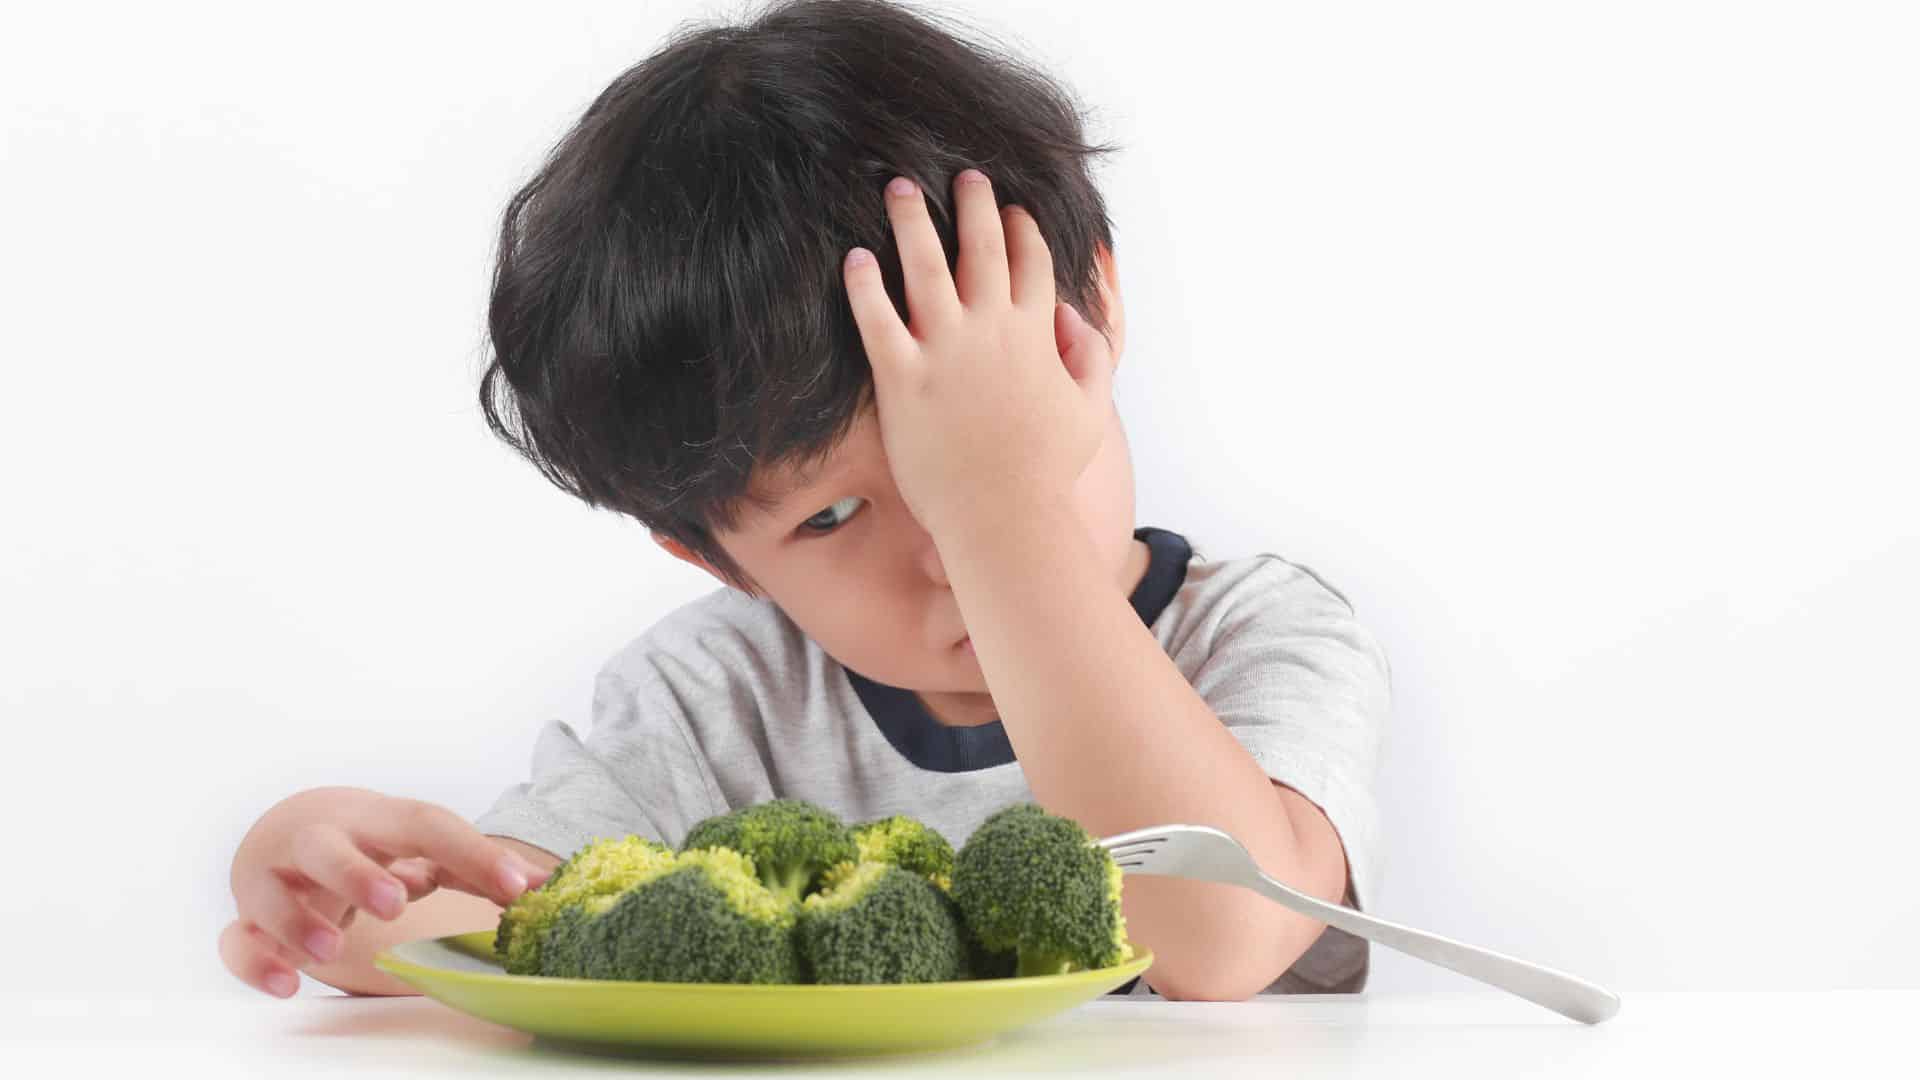 Crise des 2 ans : que faire si mon enfant refuse de manger